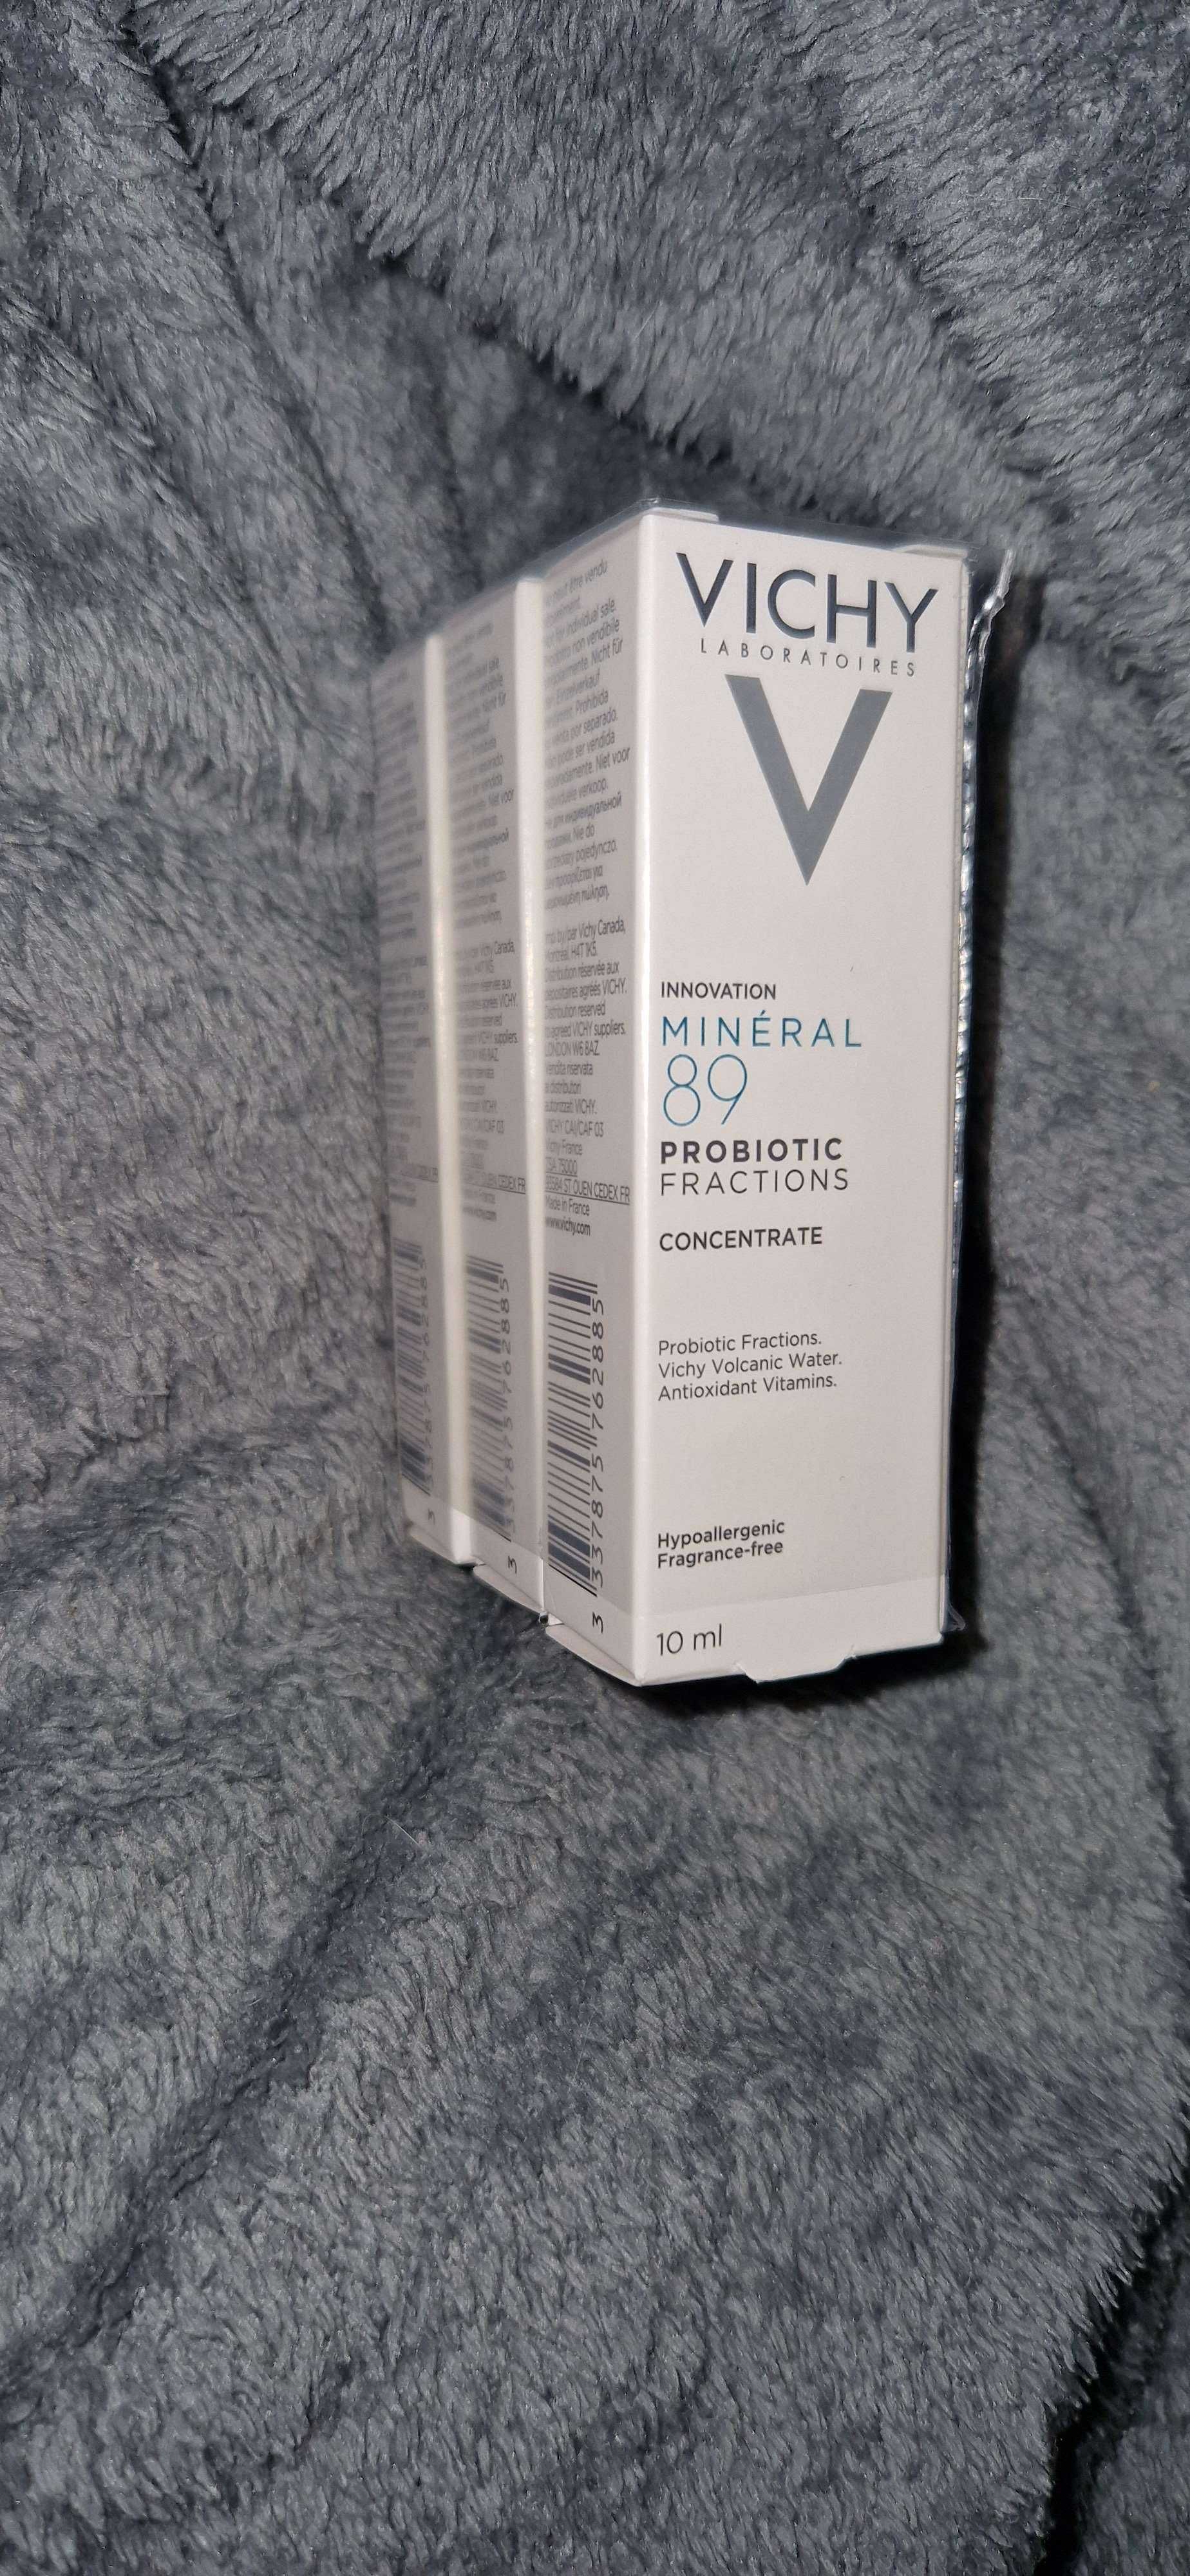 3x Vichy Minéral 89 Probiotic Fractions serum 10ml (30ml łącznie)